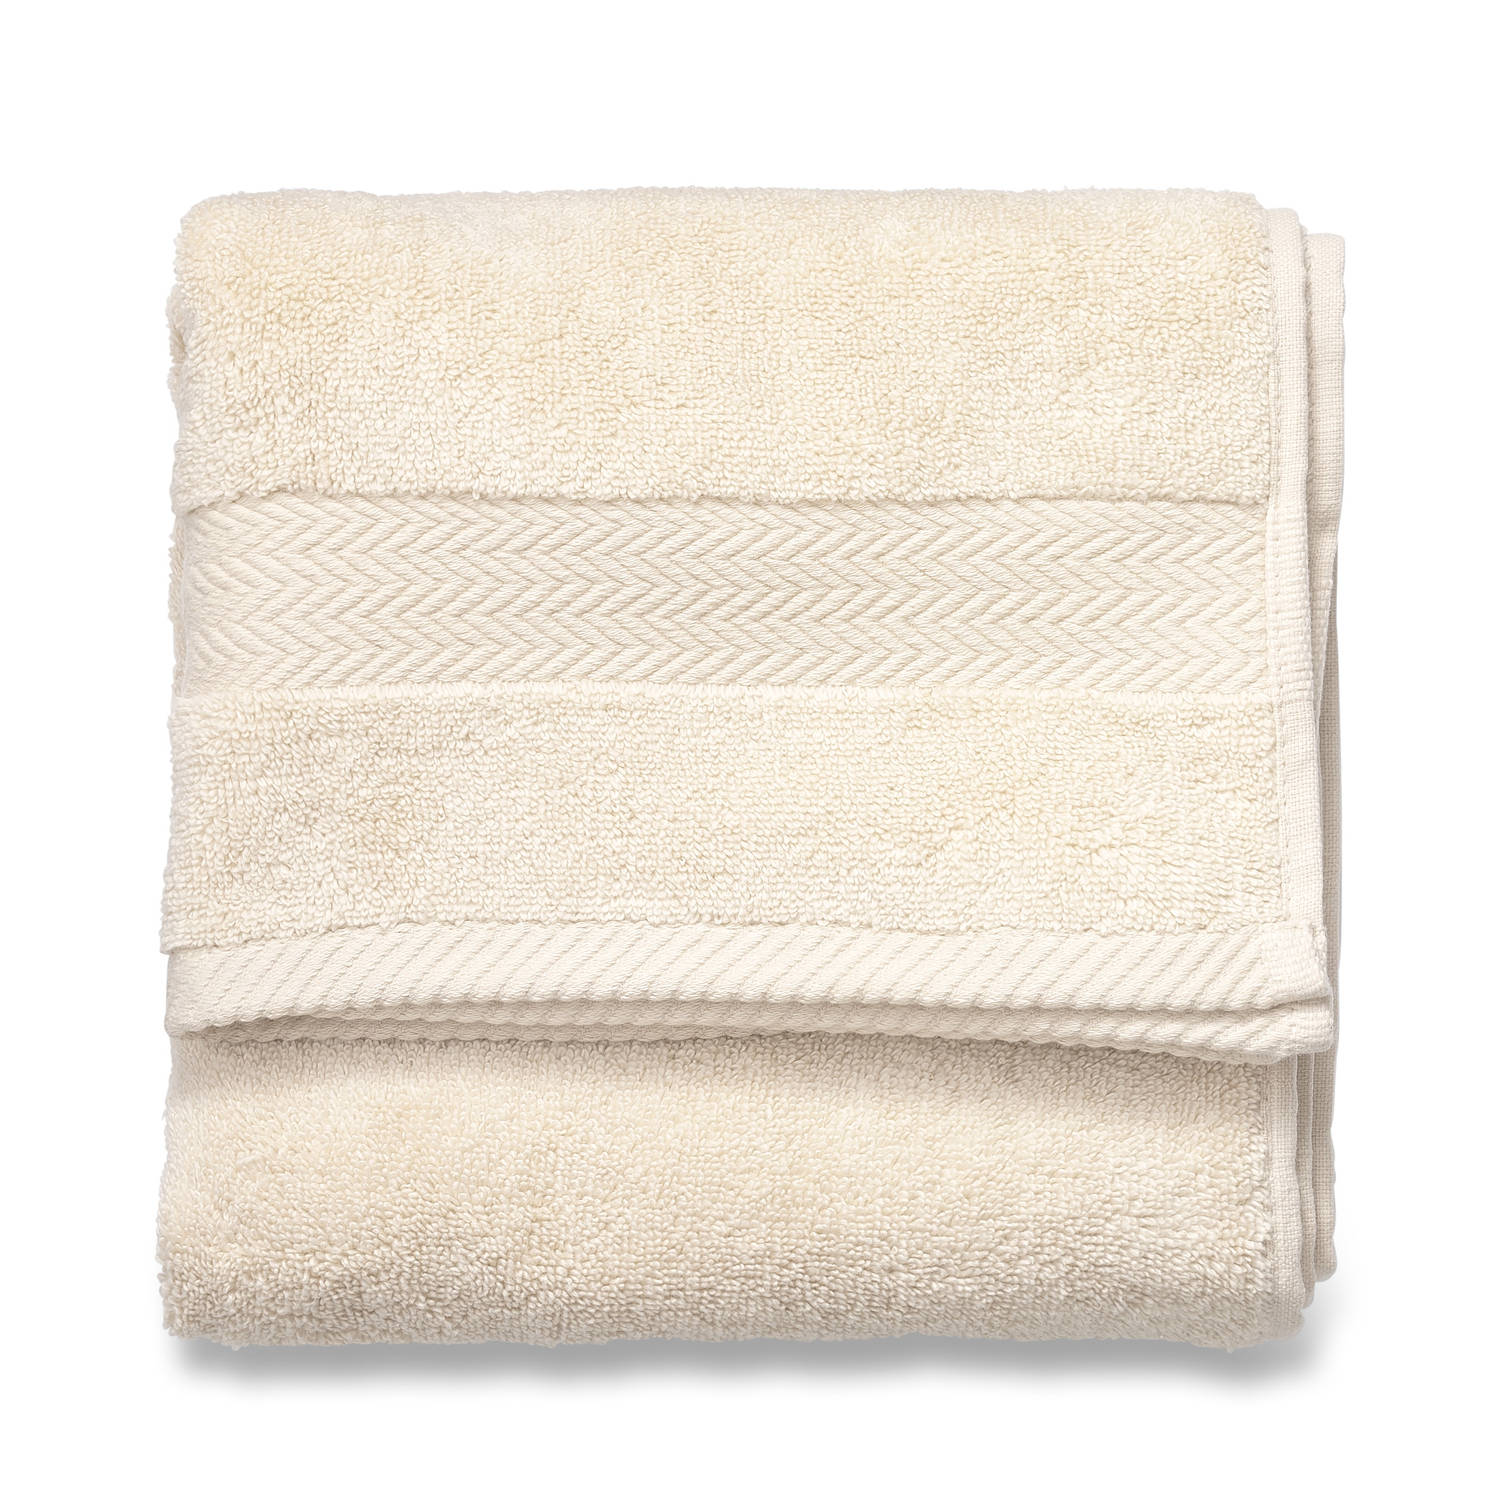 Intimidatie verdwijnen Subjectief Blokker handdoek 600g - crème - 50x100 cm | Blokker